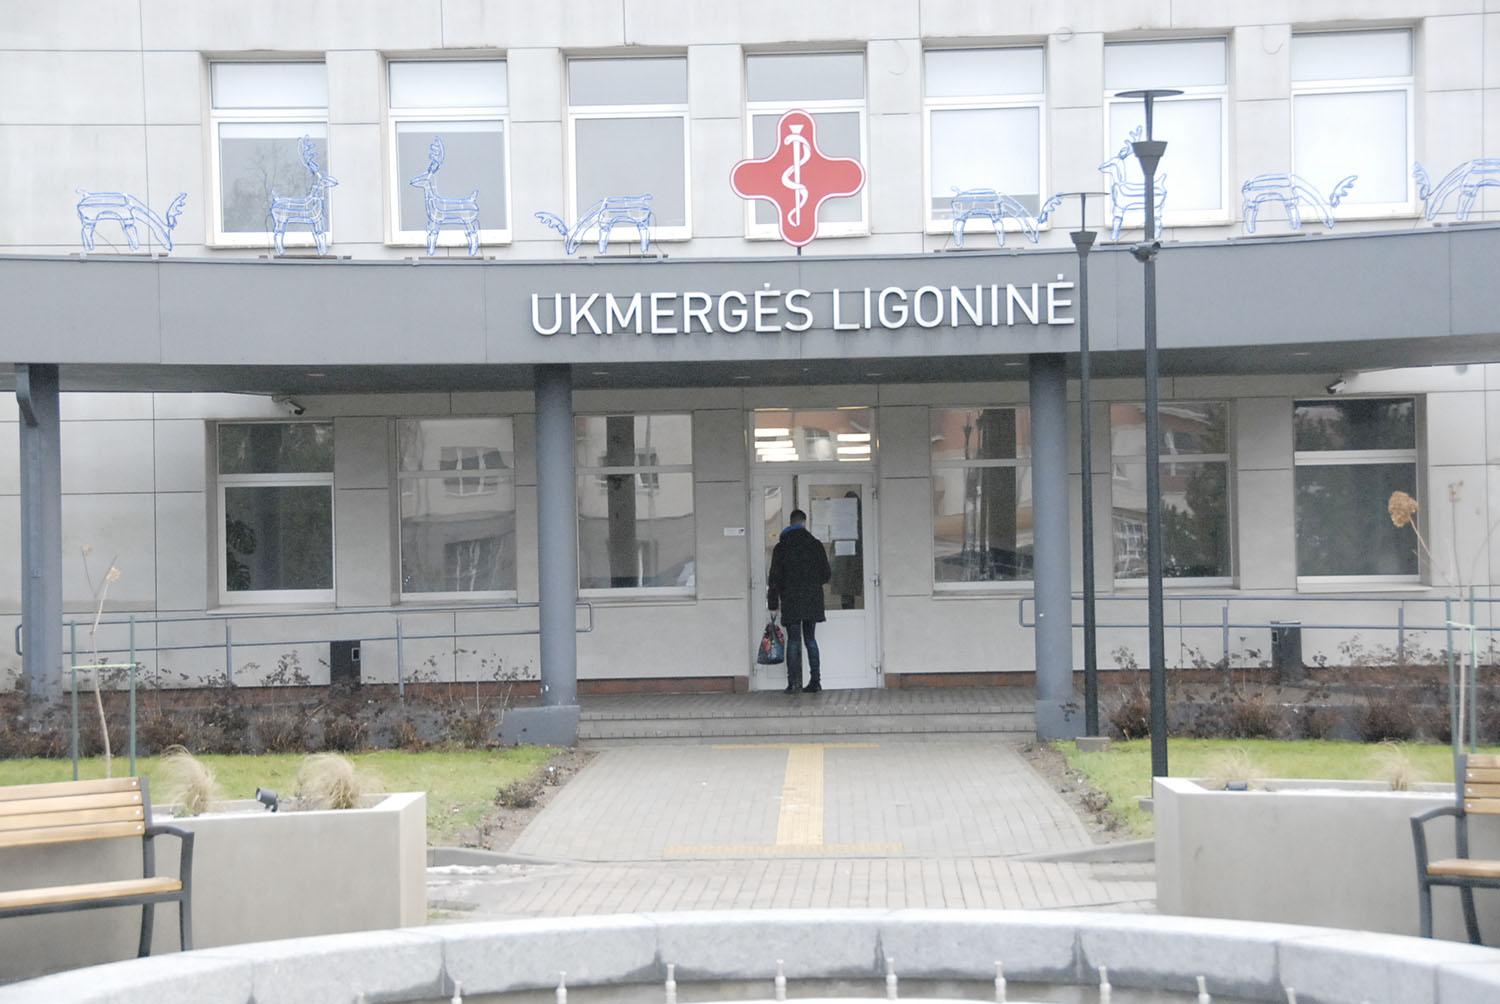 Priimtas sprendimas – ligoninės dalininke ateityje taps valstybė / Ukmergės ligoninės laukia pokyčiai.  Gedimino Nemunaičio nuotr.